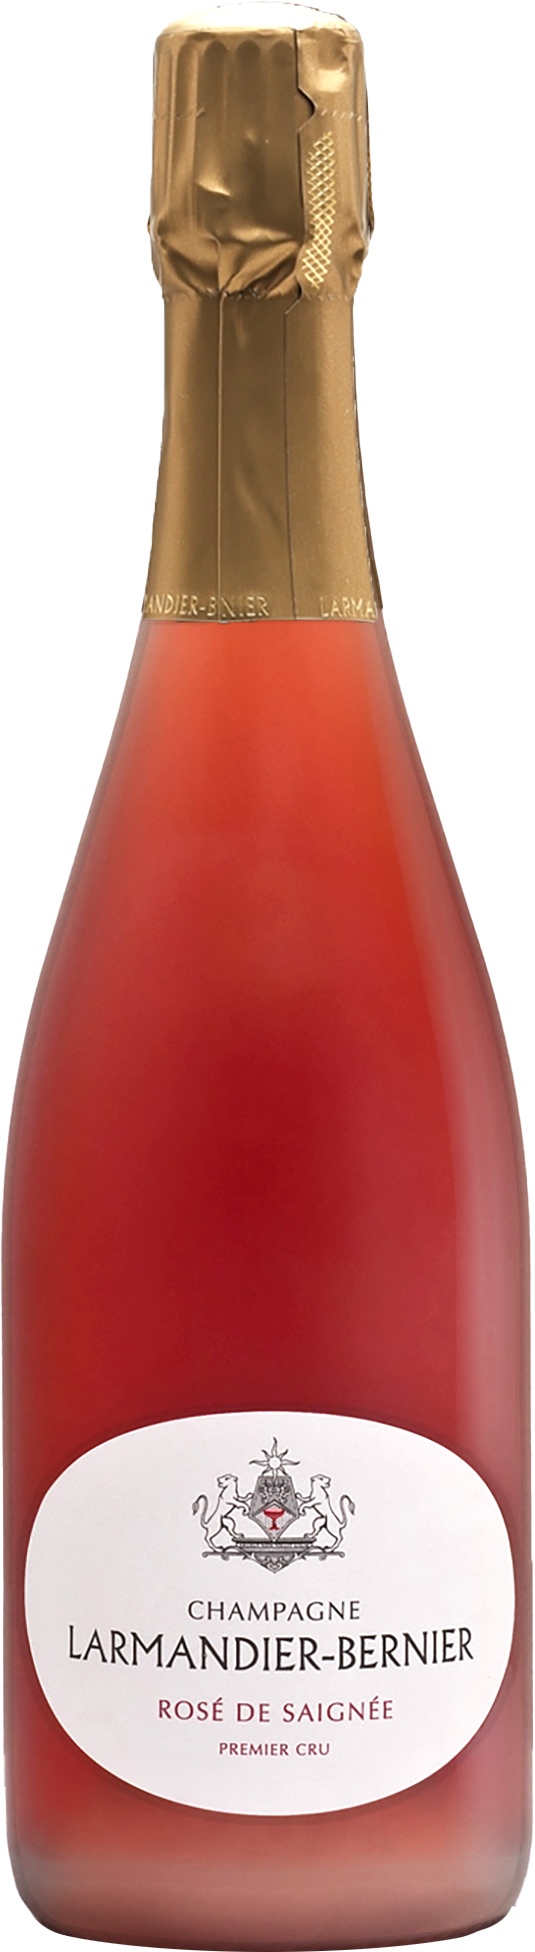 Champagne Larmandier-Bernier 1er Cru Rosé de Saignée NV (Disg. Sep 2017)